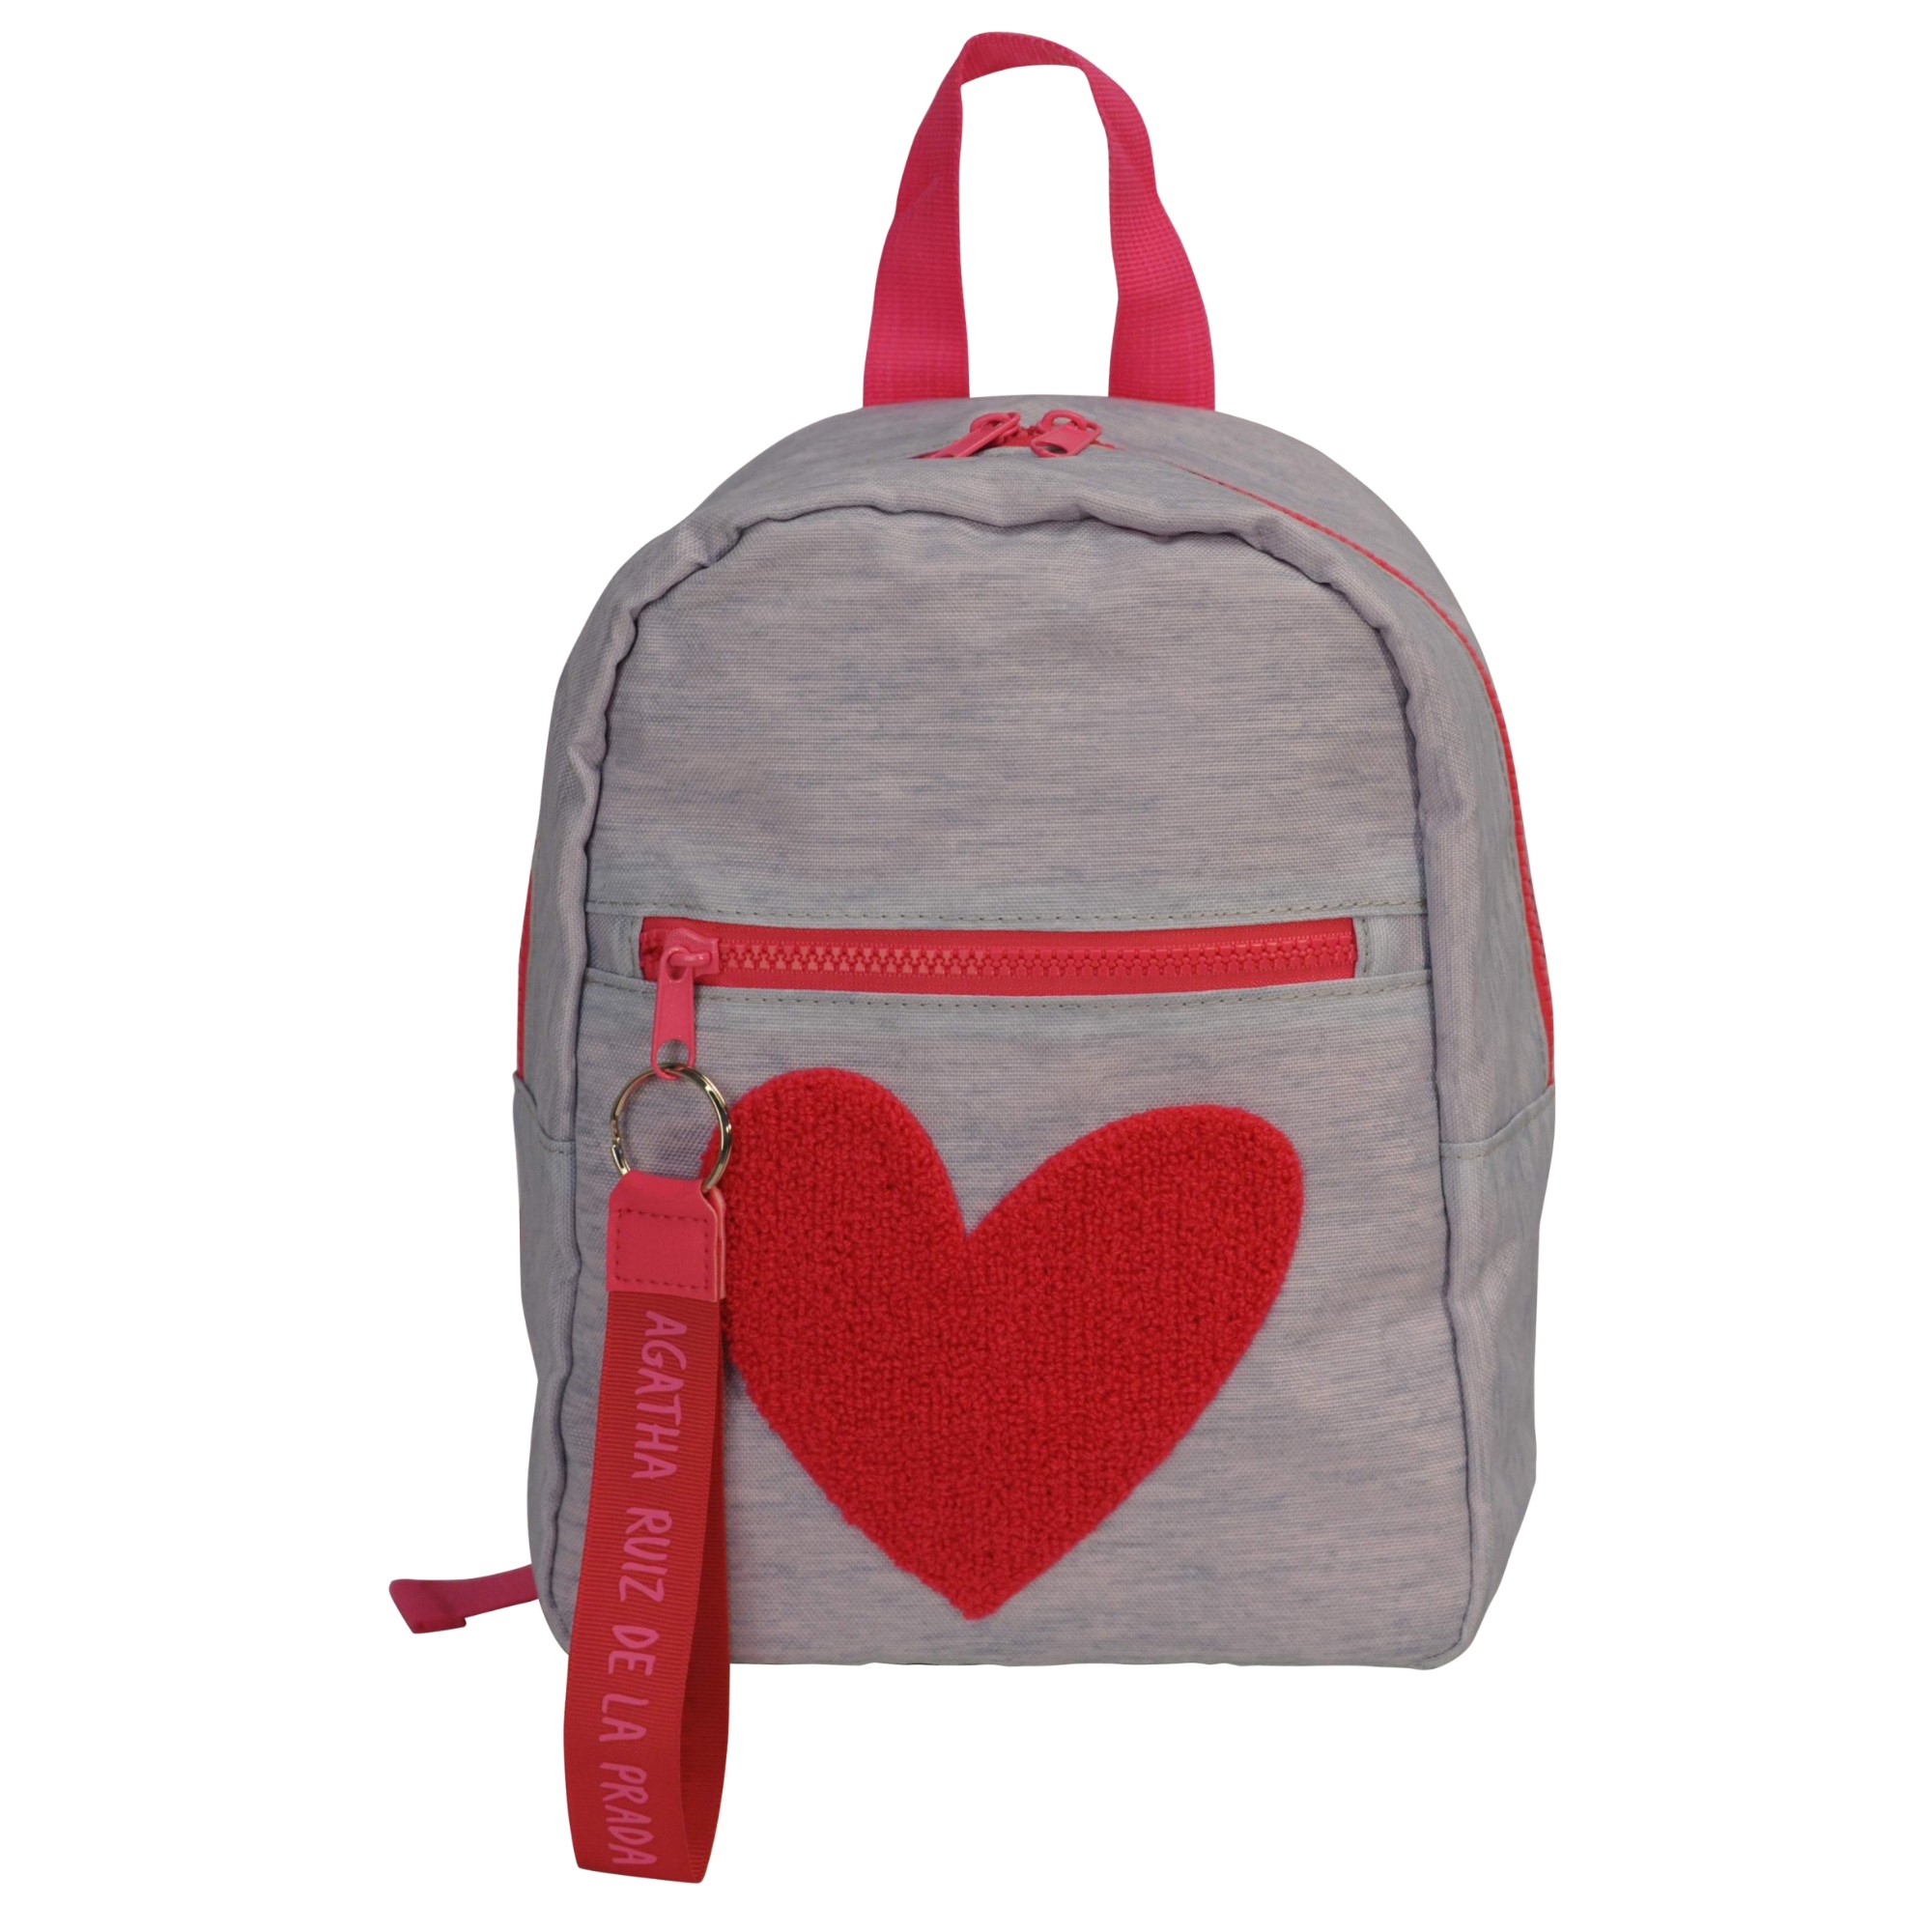 OEM ميني حقيبة الظهر نايلون محفظة كيس كلية الأزياء |Daypack مع التطريز على شكل قلب